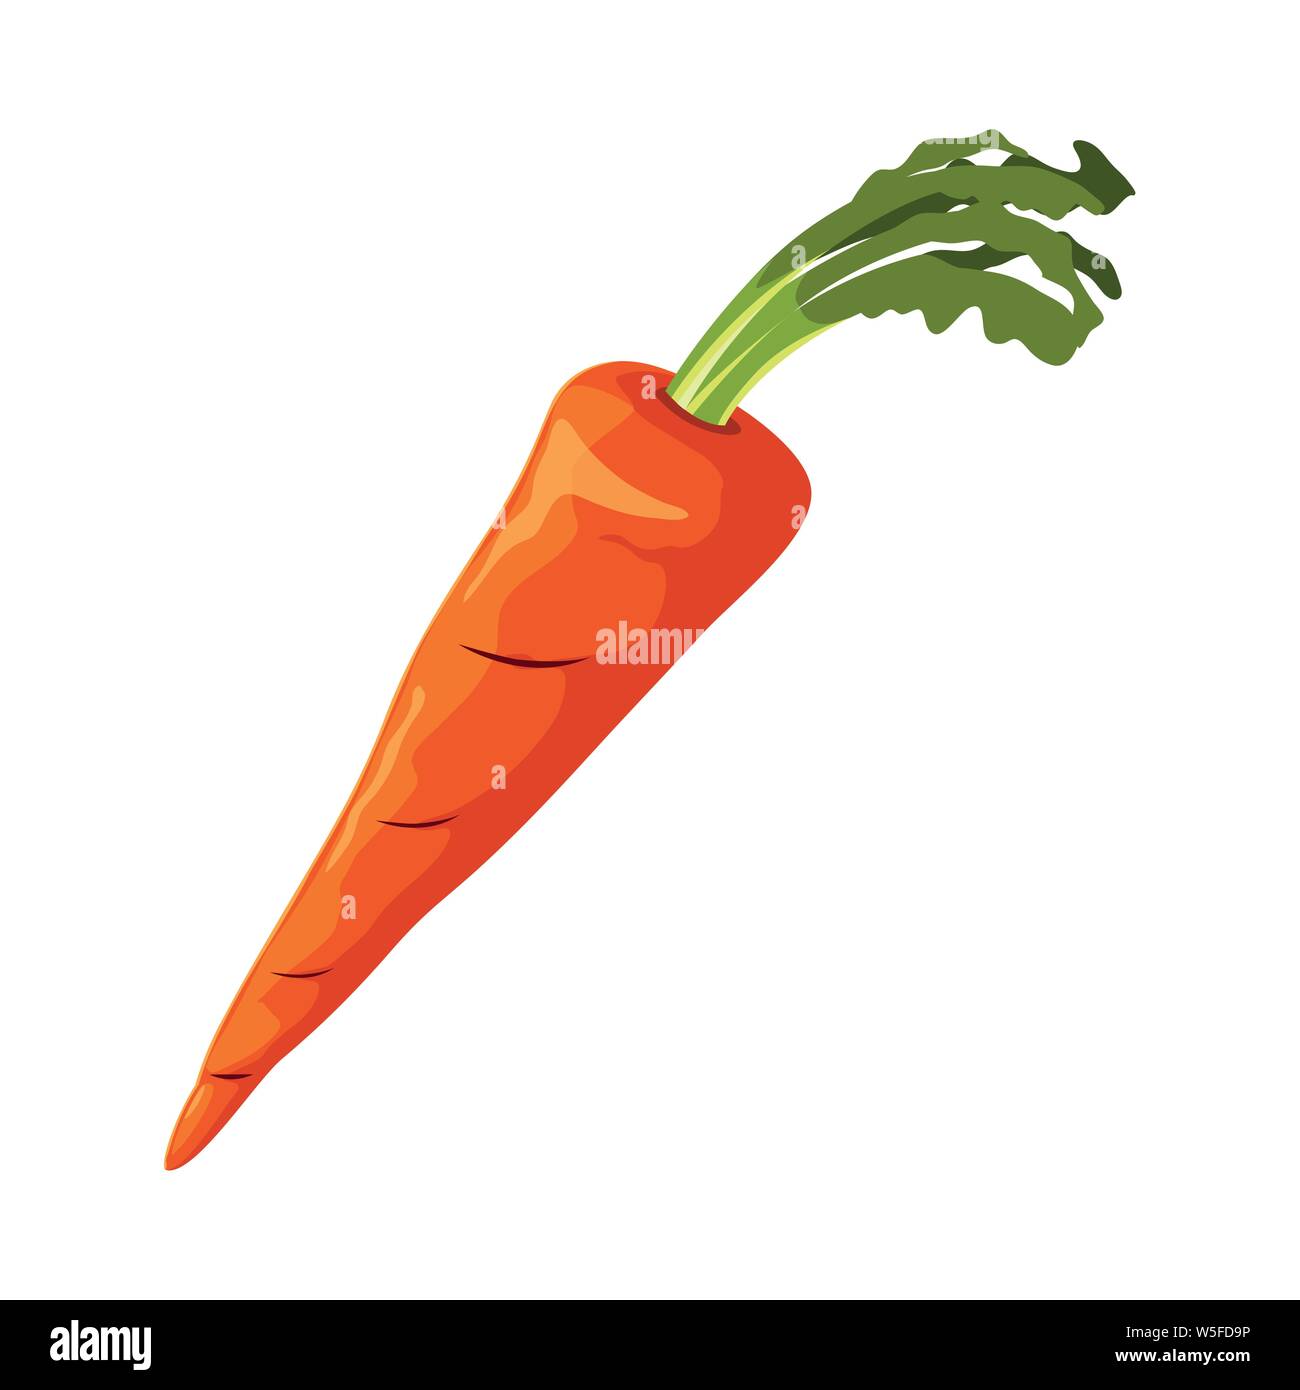 Frisches Gemüse Karotte auf weißem Hintergrund Vector Illustration Stock Vektor